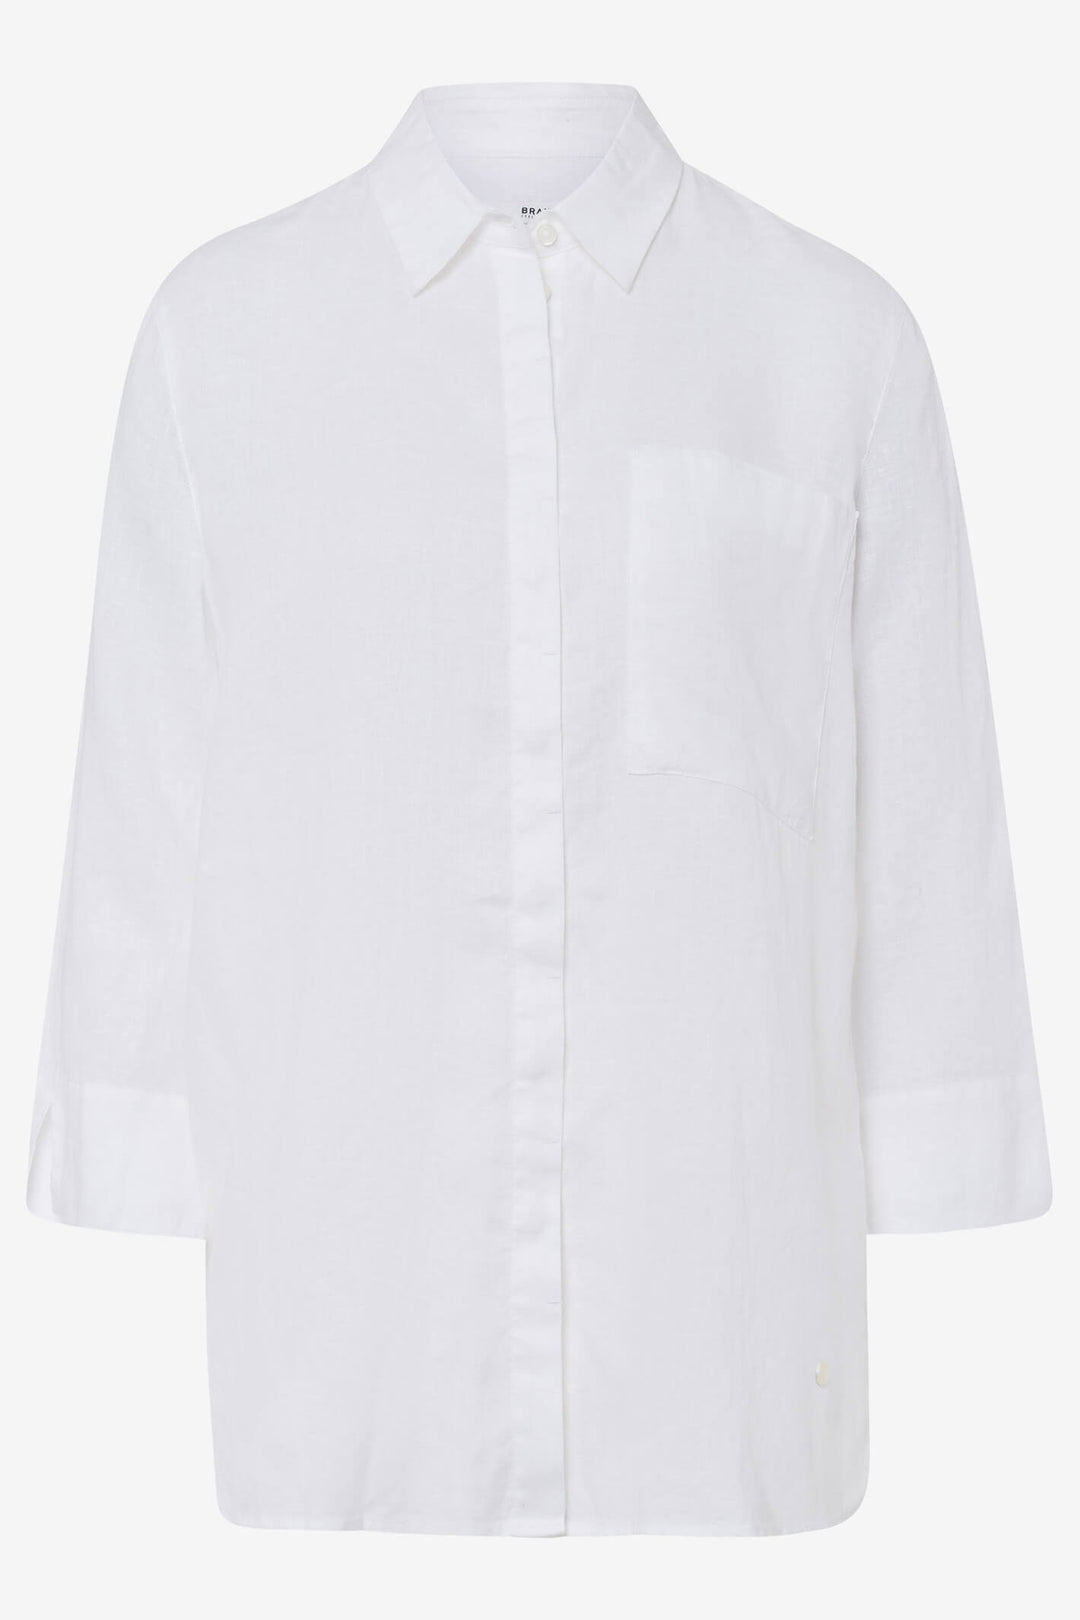 Brax Vicki 44-7027-99 White Shirt - Shirley Allum Boutique